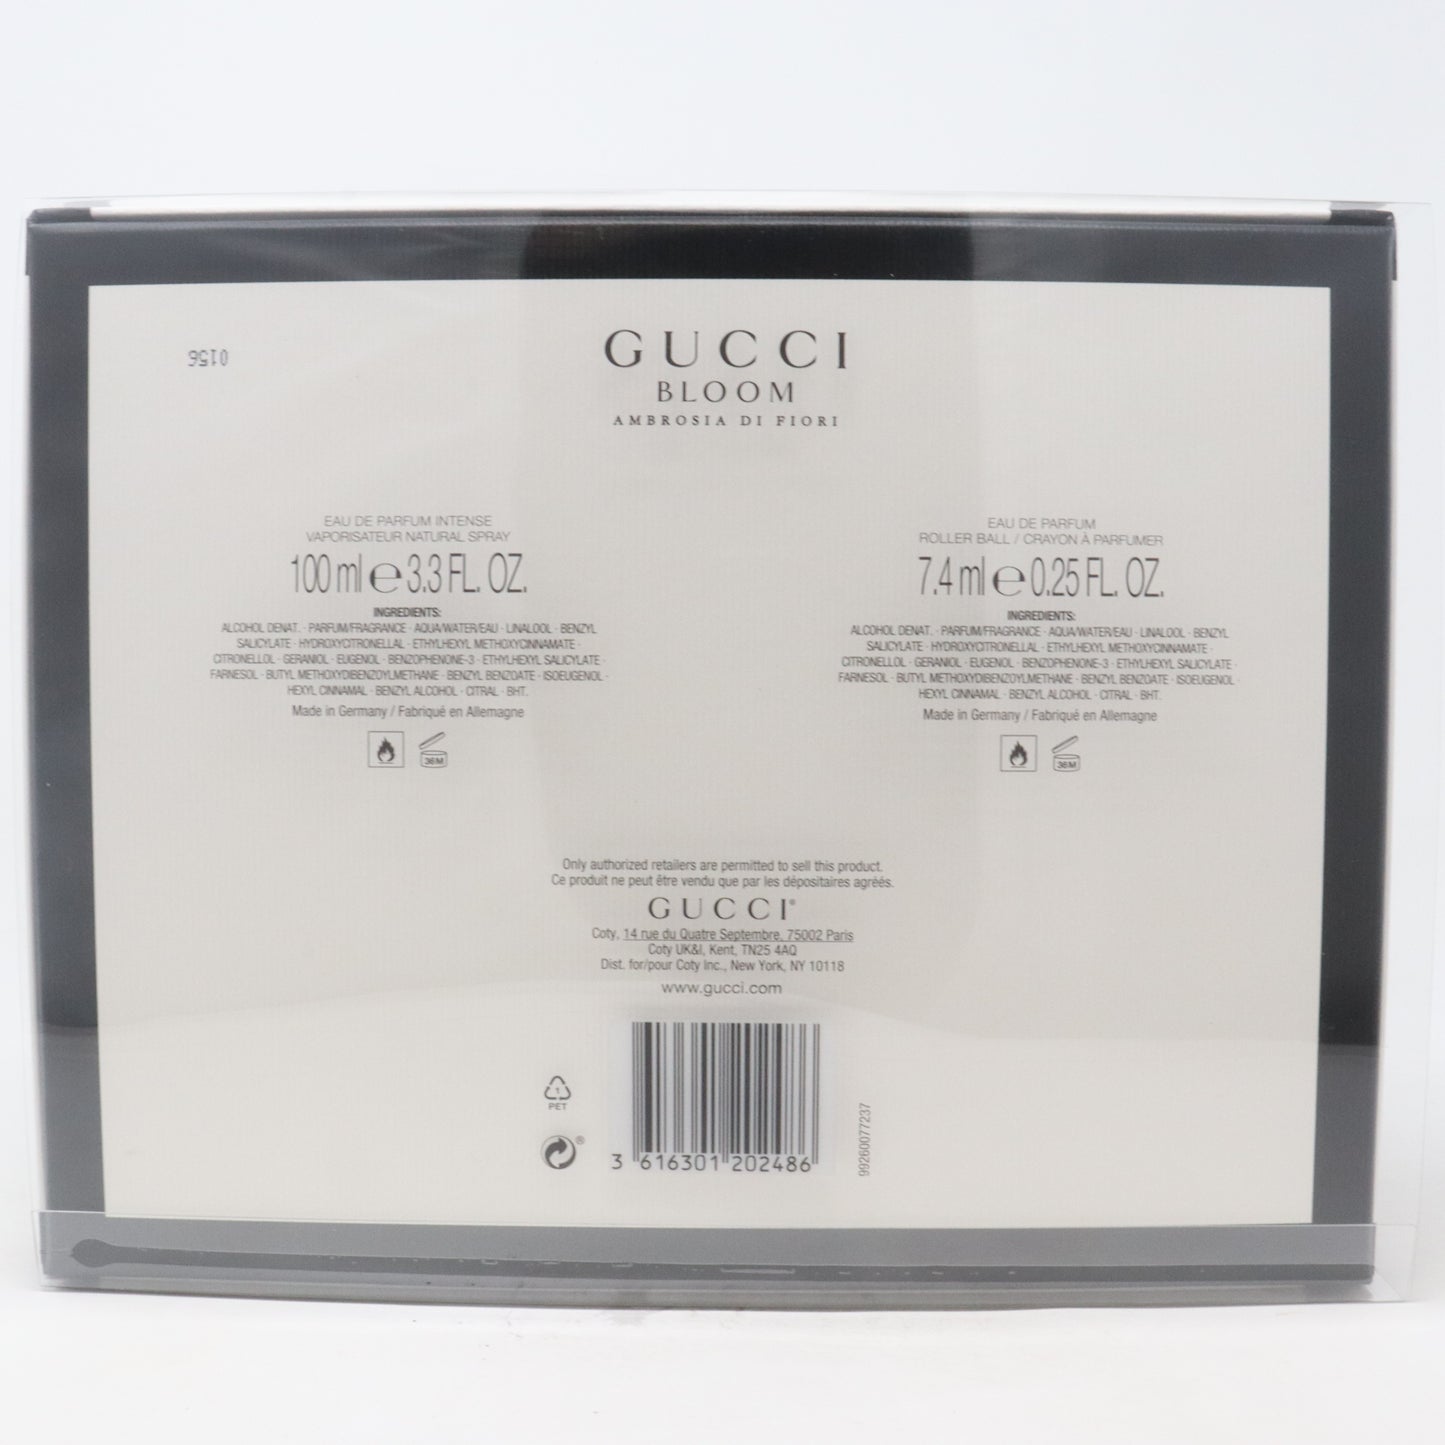 Gucci Bloom Ambrosia Di Fiori Eau De Parfum 2 Pcs Gift Set  / New With Box